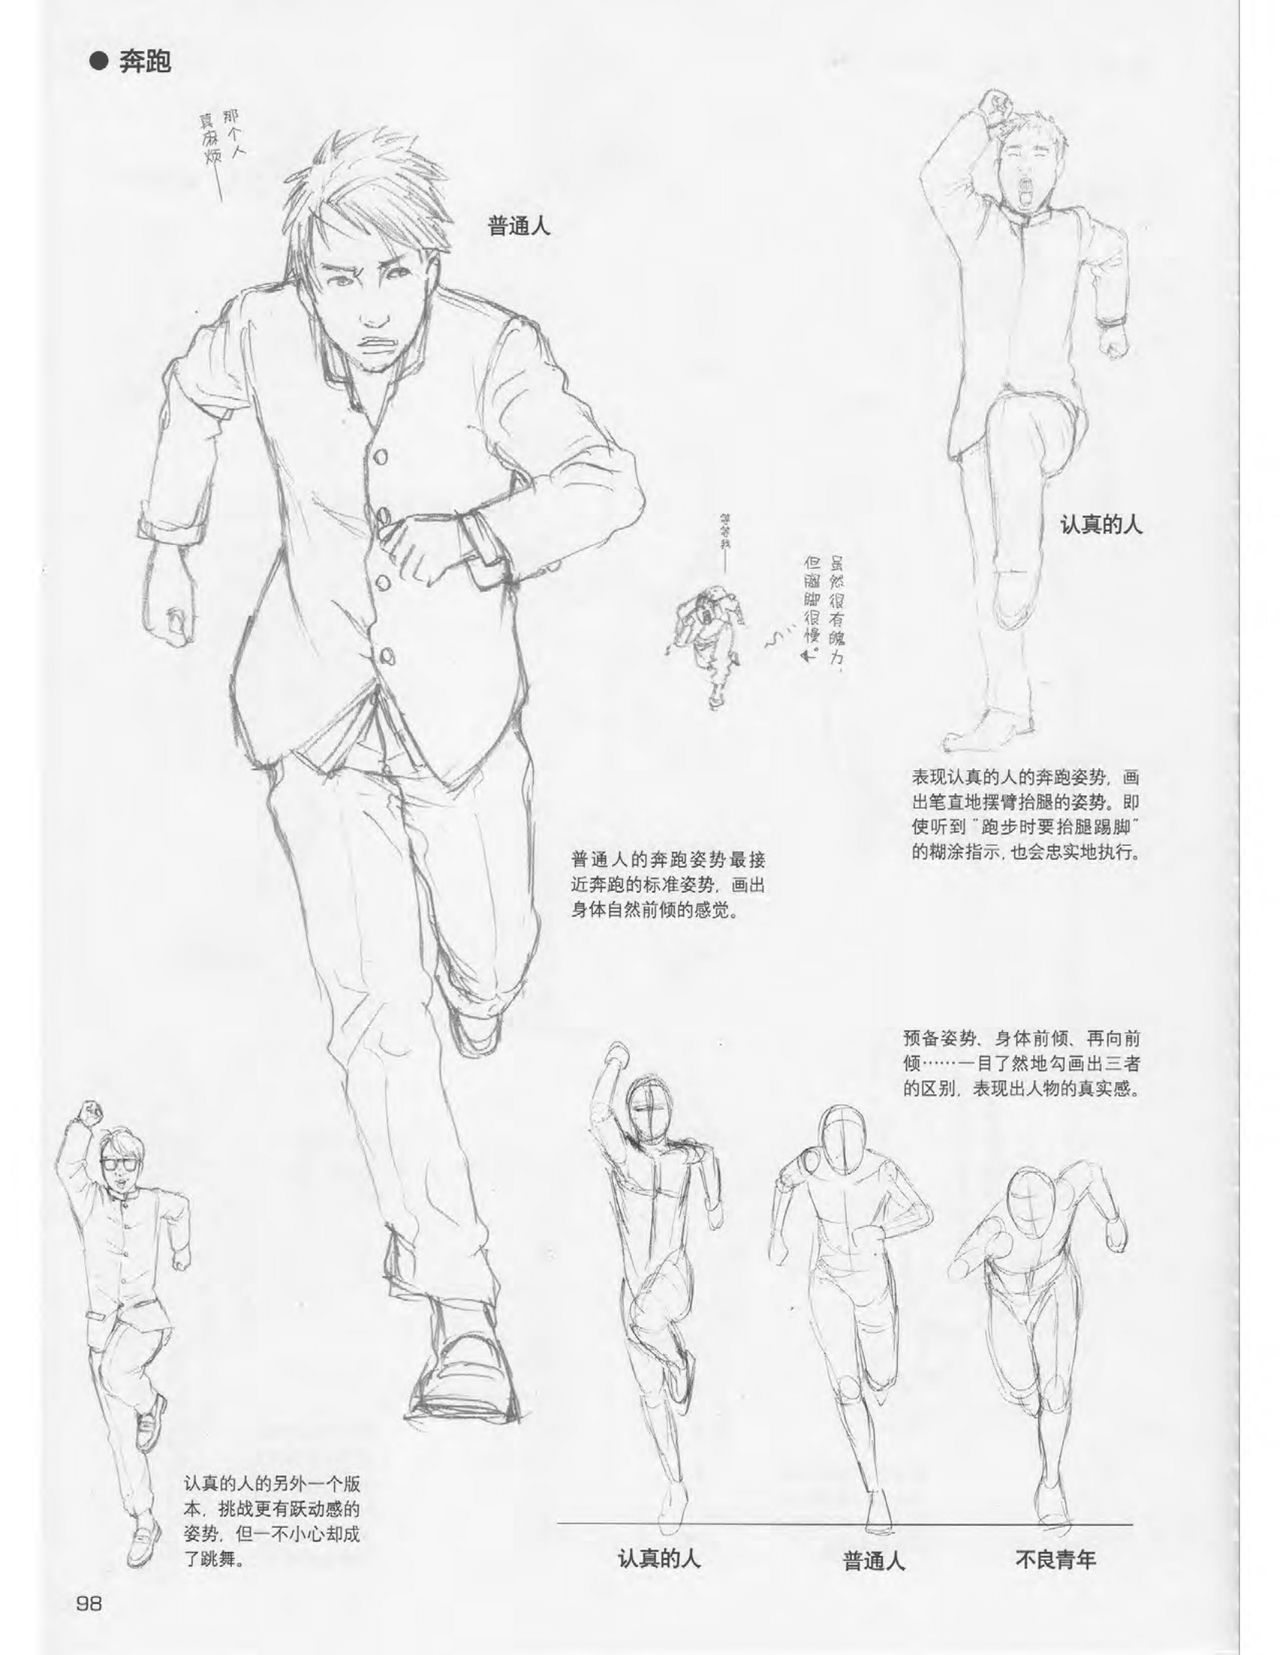 Japanese Manga Master Lecture 3: Lin Akira and Kakumaru Maru Talk About Glamorous Character Modeling 98